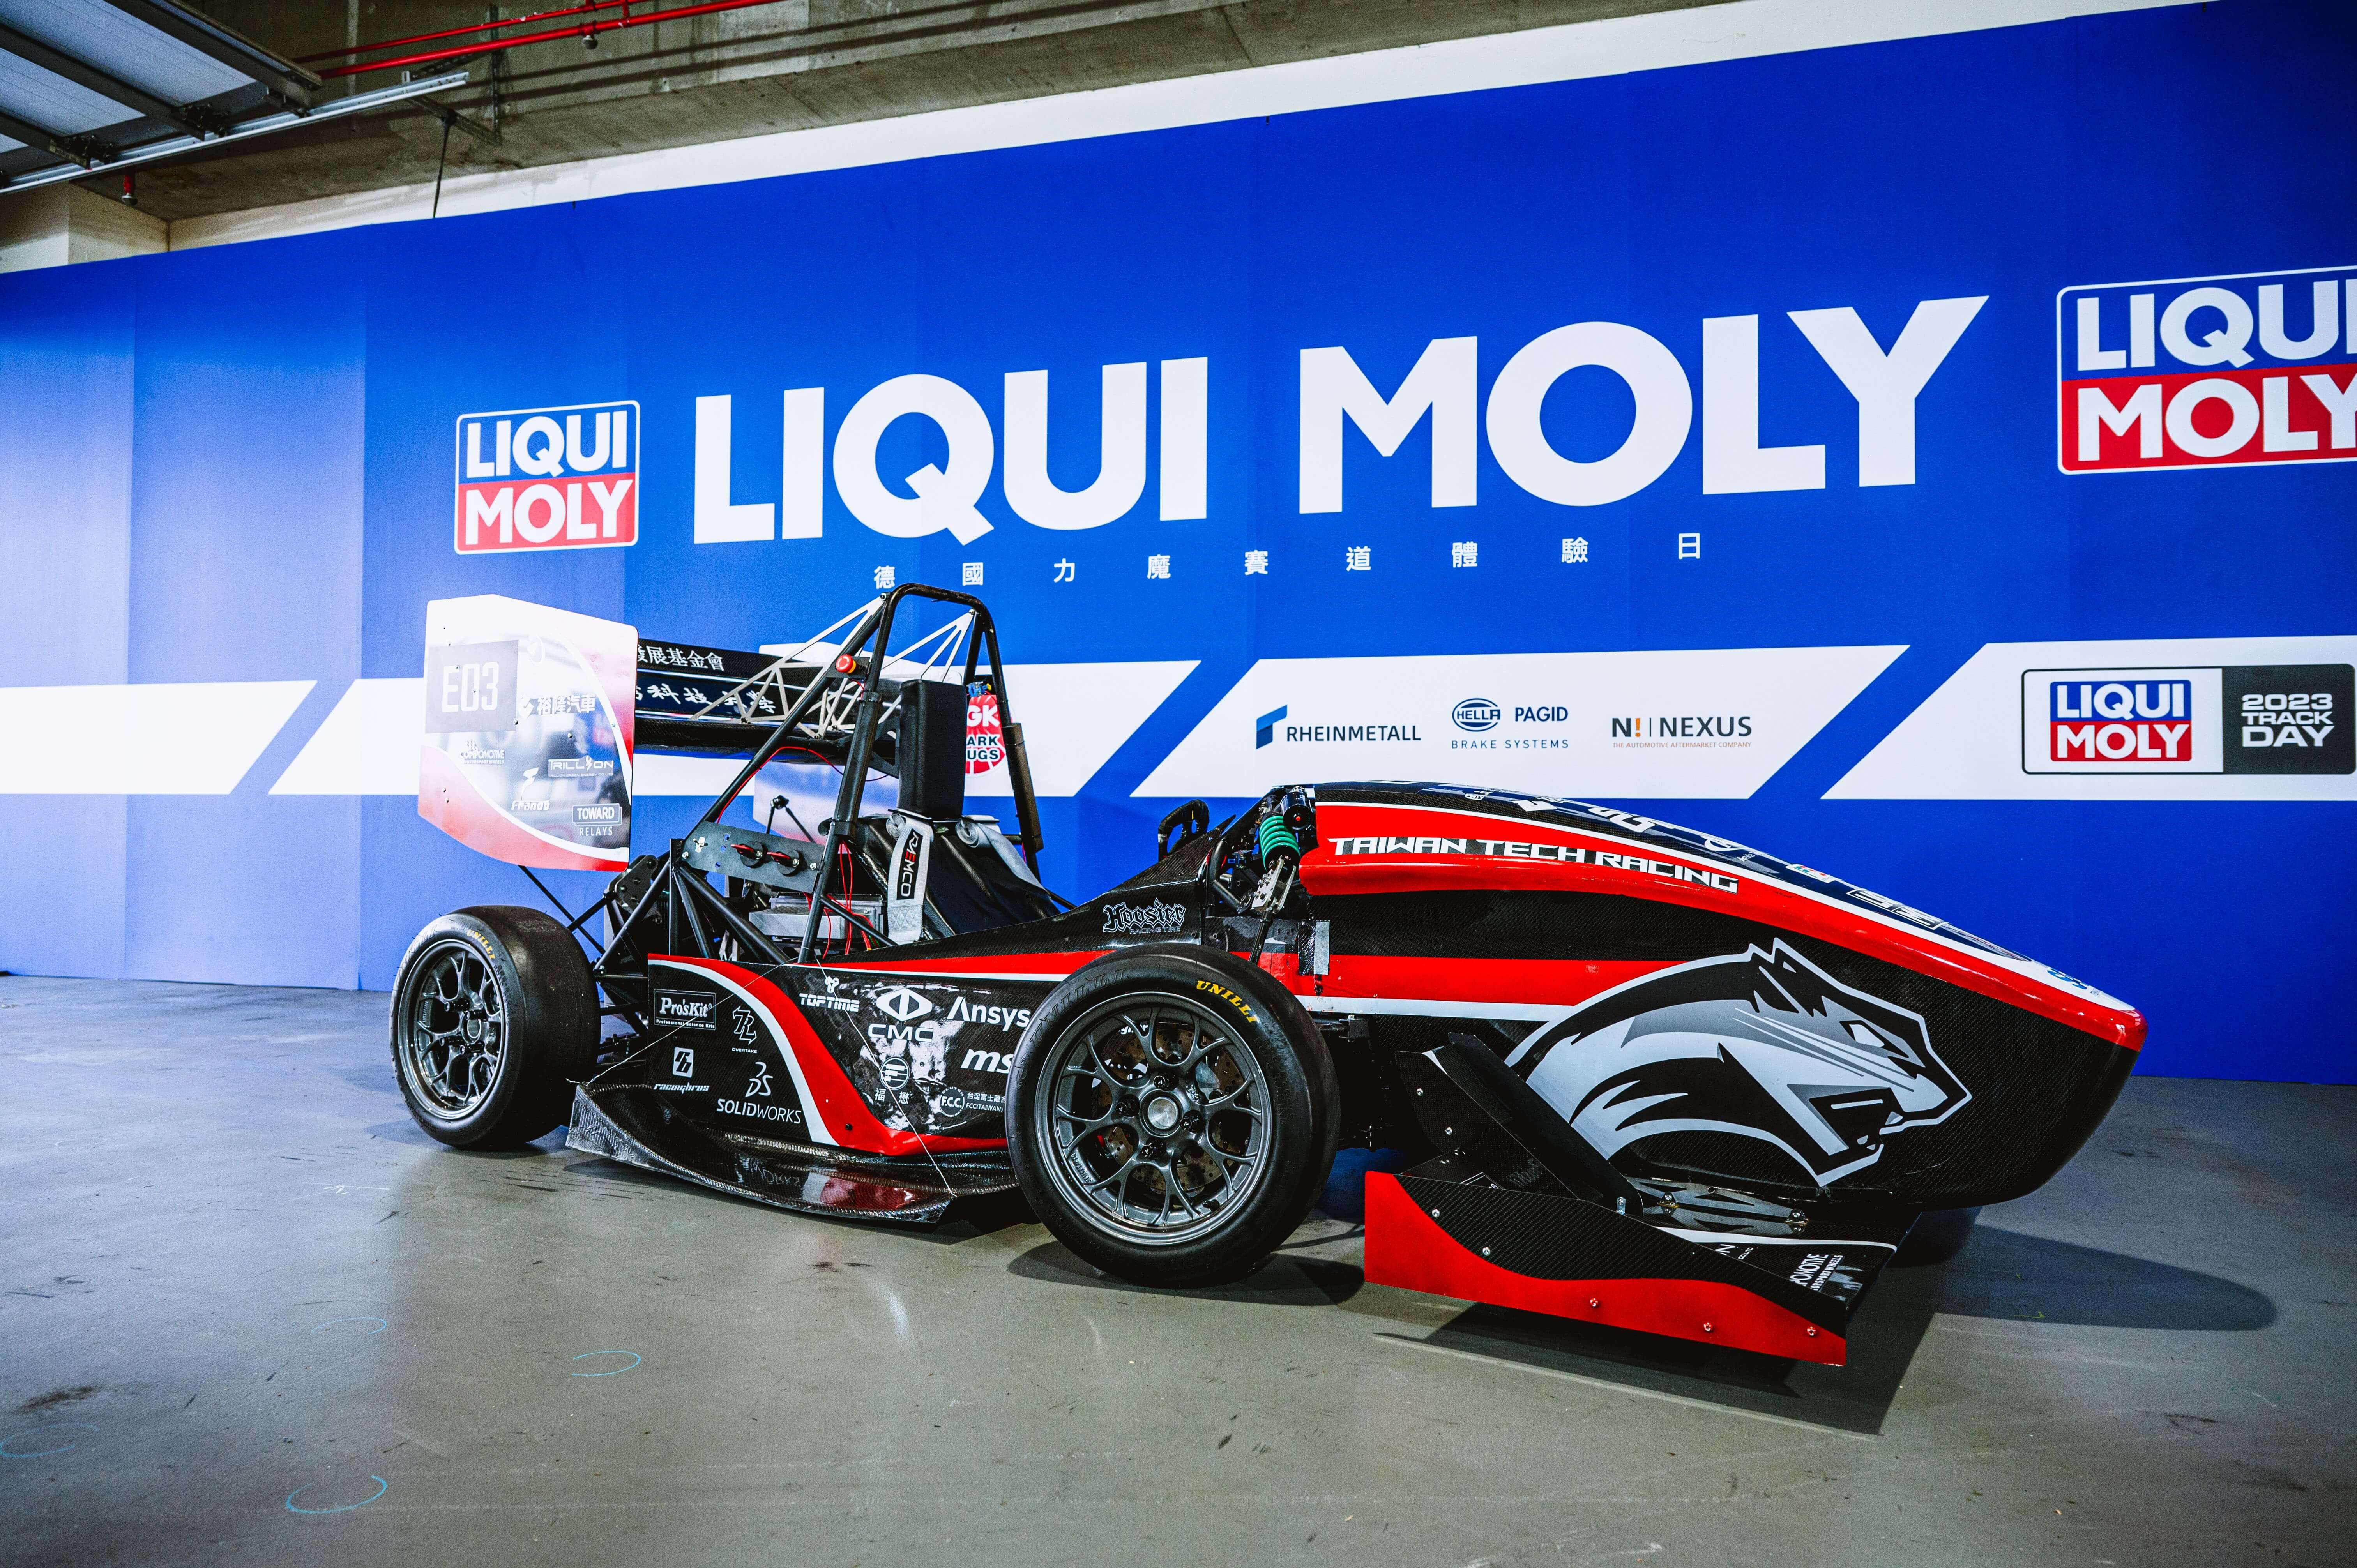 臺科大方程式賽車隊受邀於 9月24日LIQUI MOLY 賽道日展出。